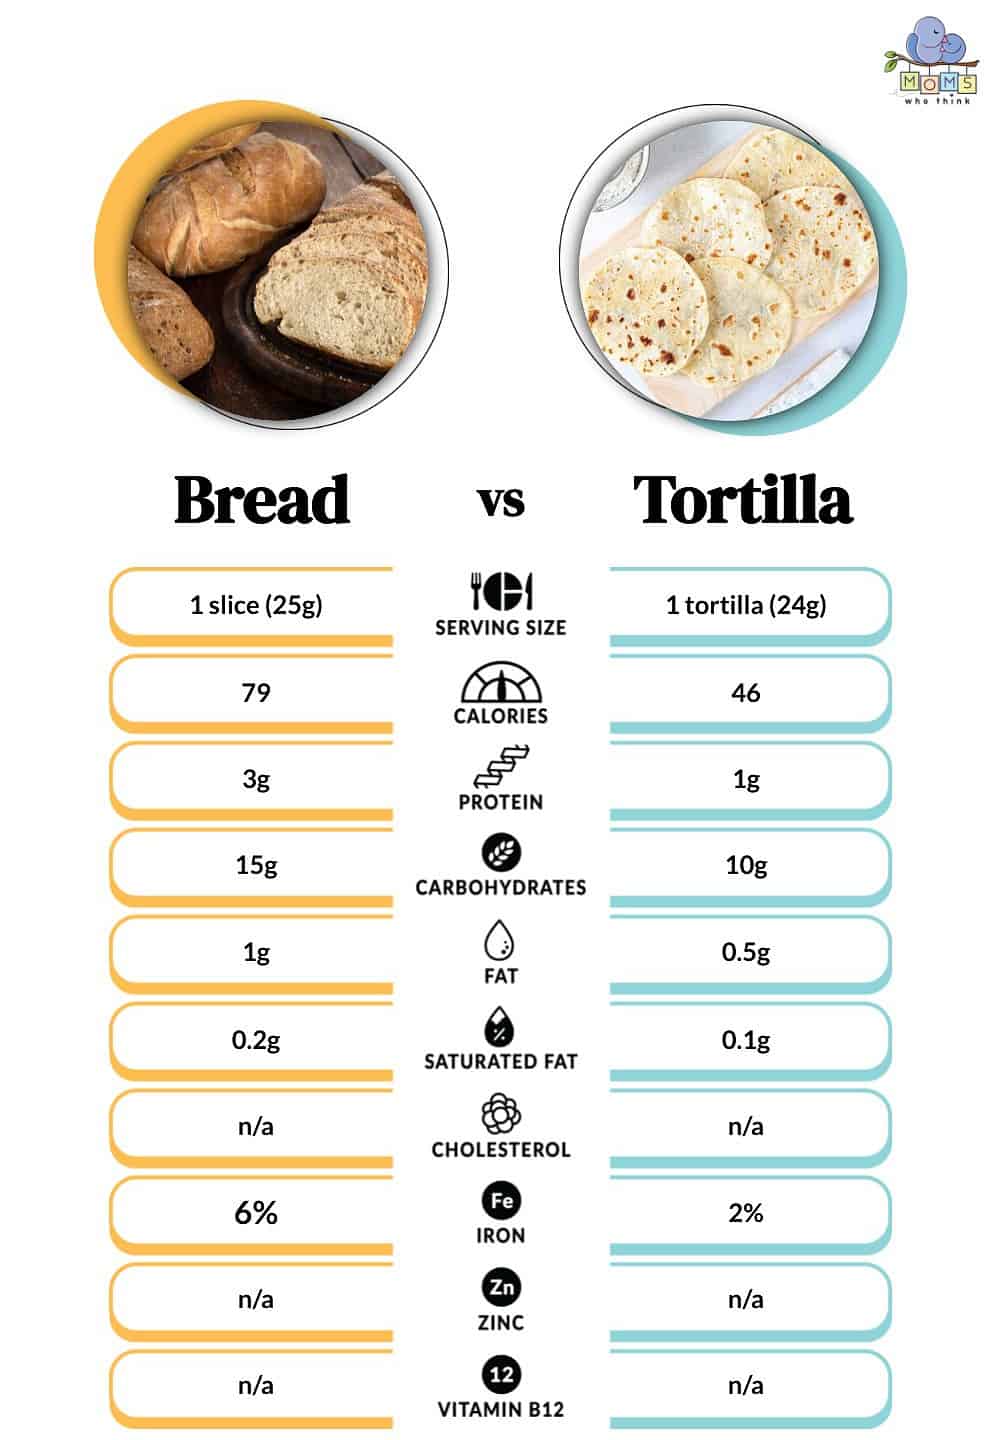 Bread vs Tortilla Nutritional Facts